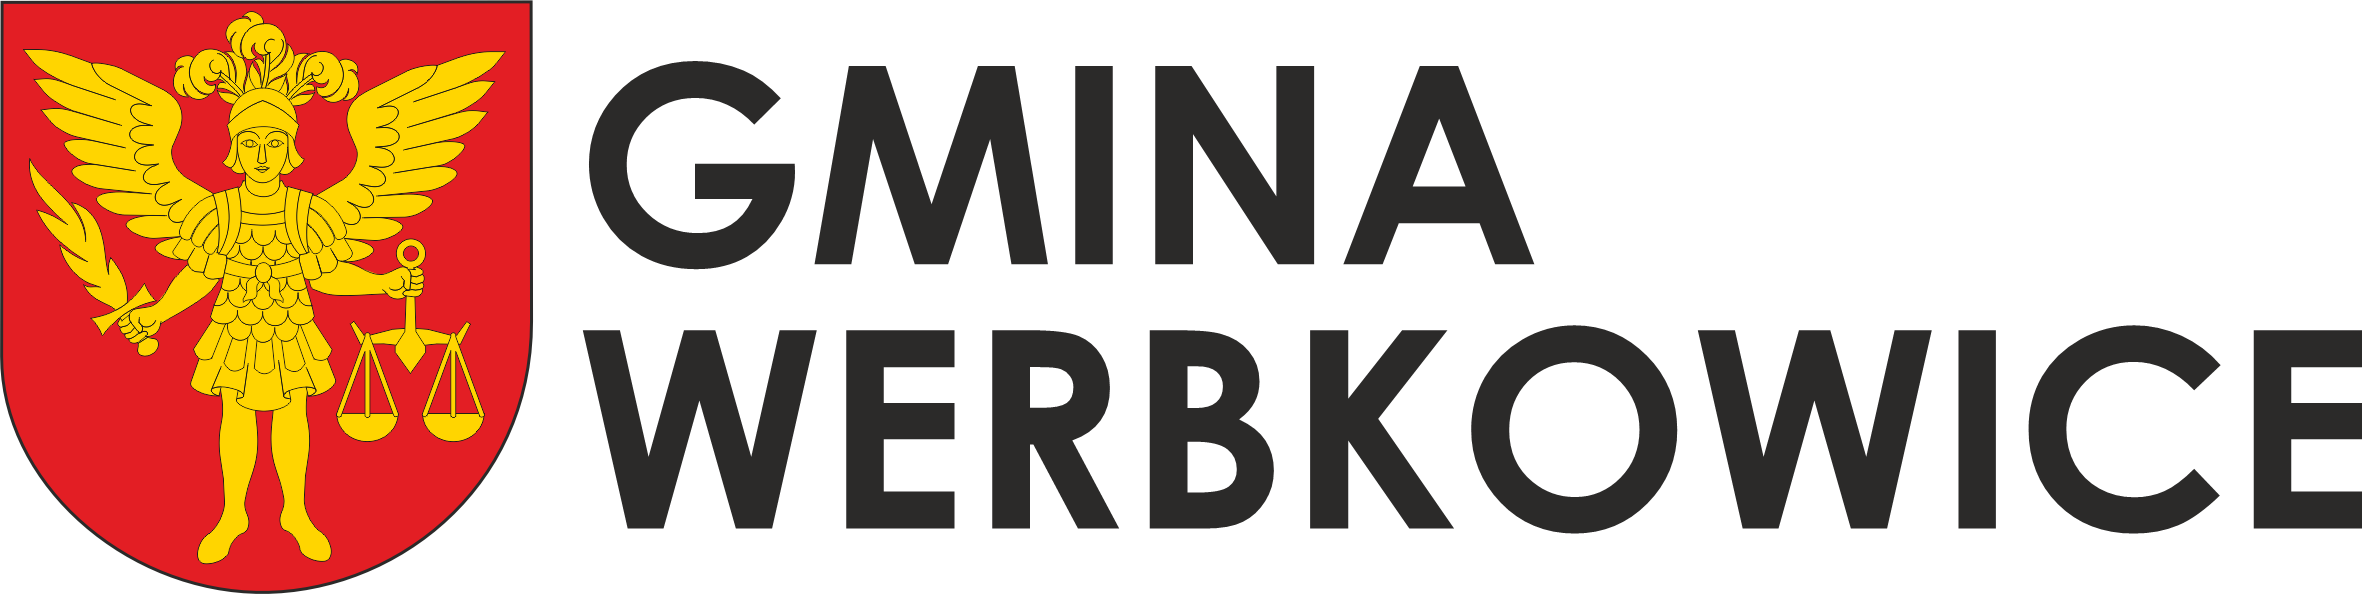 Gmina Werbkowice